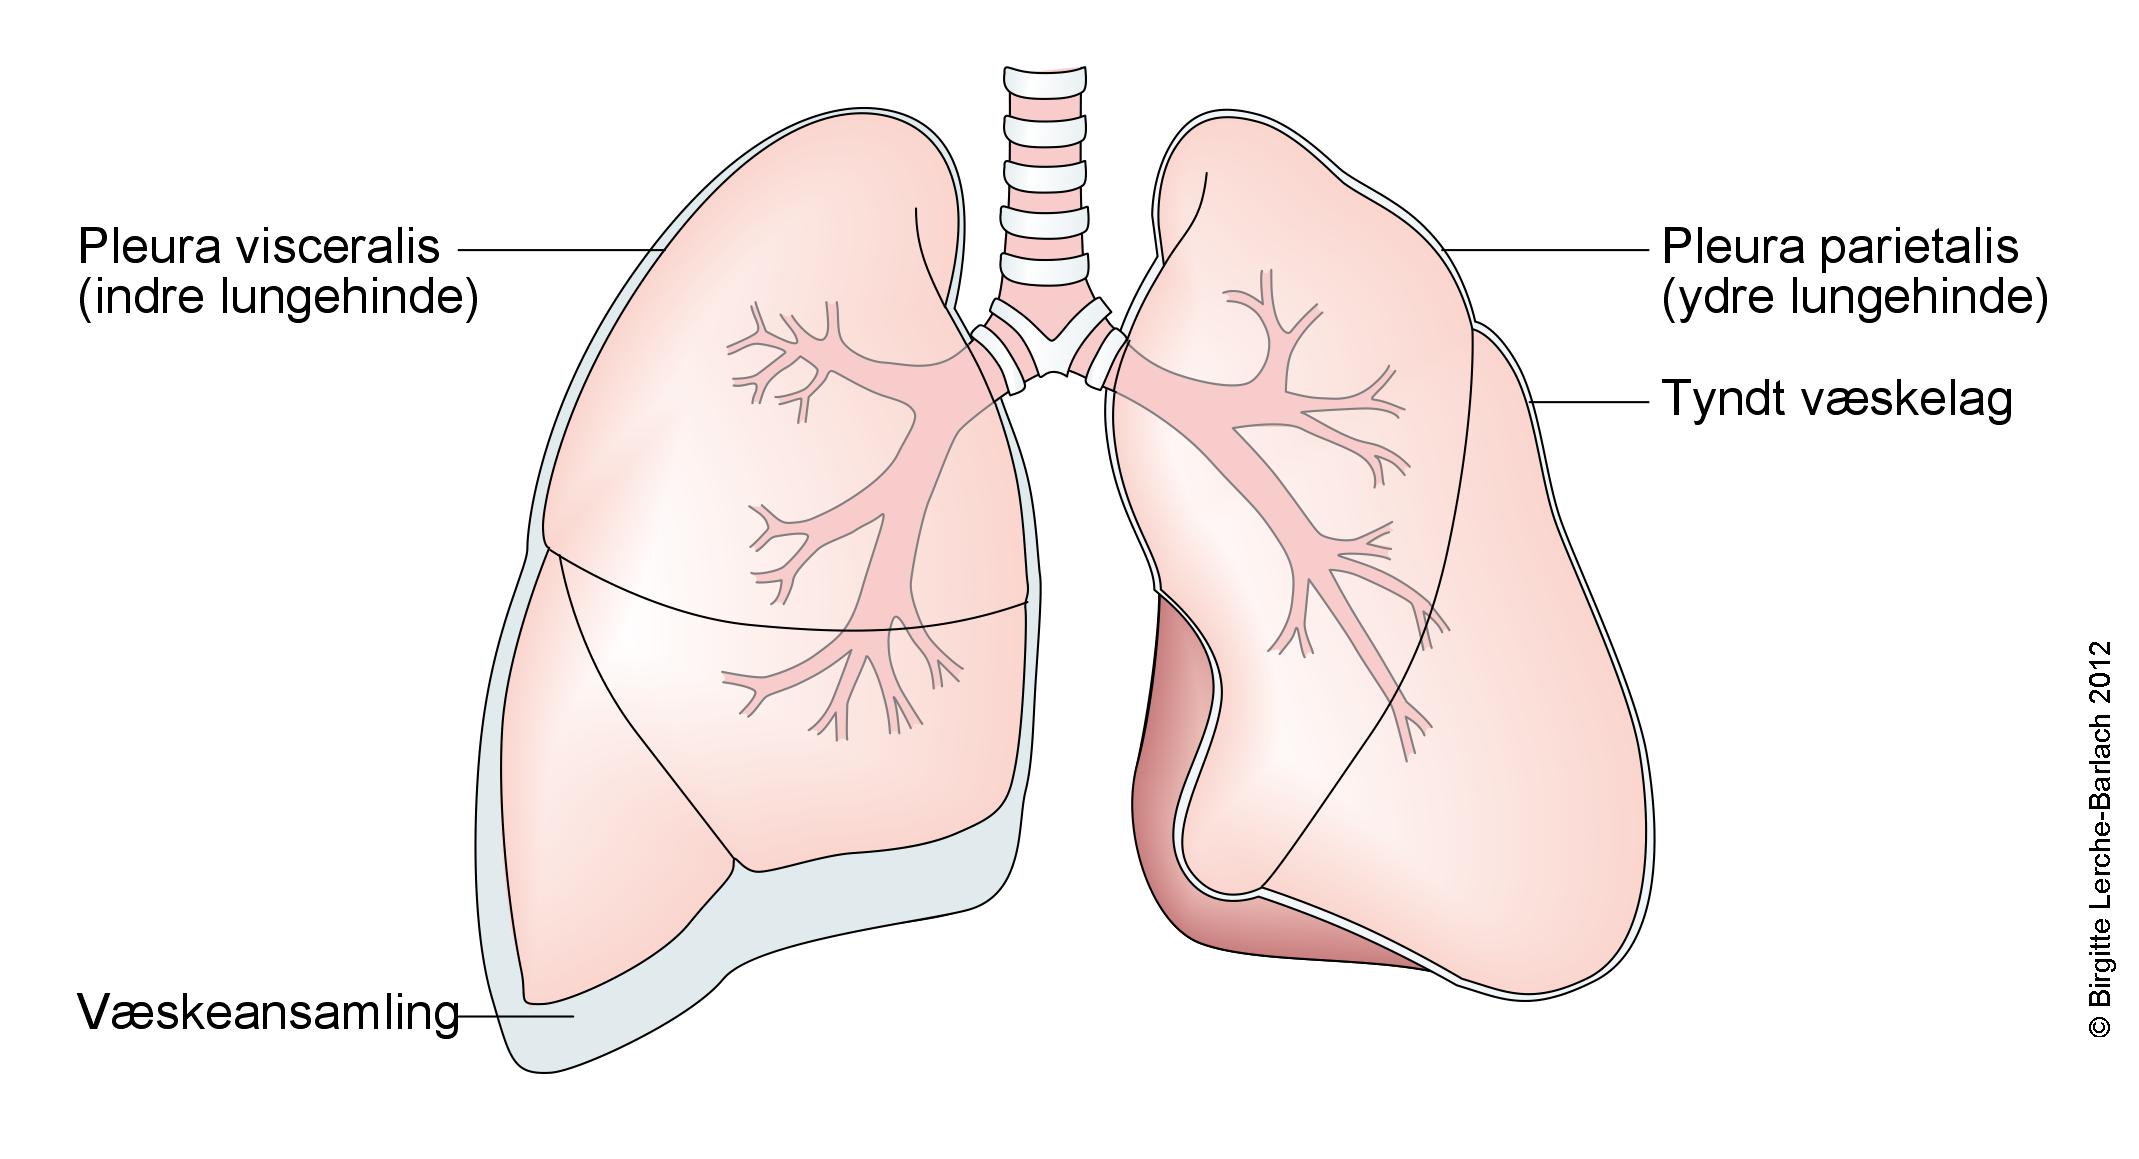 Illustration af lungerne, hvor der er en væskeansamling i lungehulen mellem den indre og ydre lungehinde.